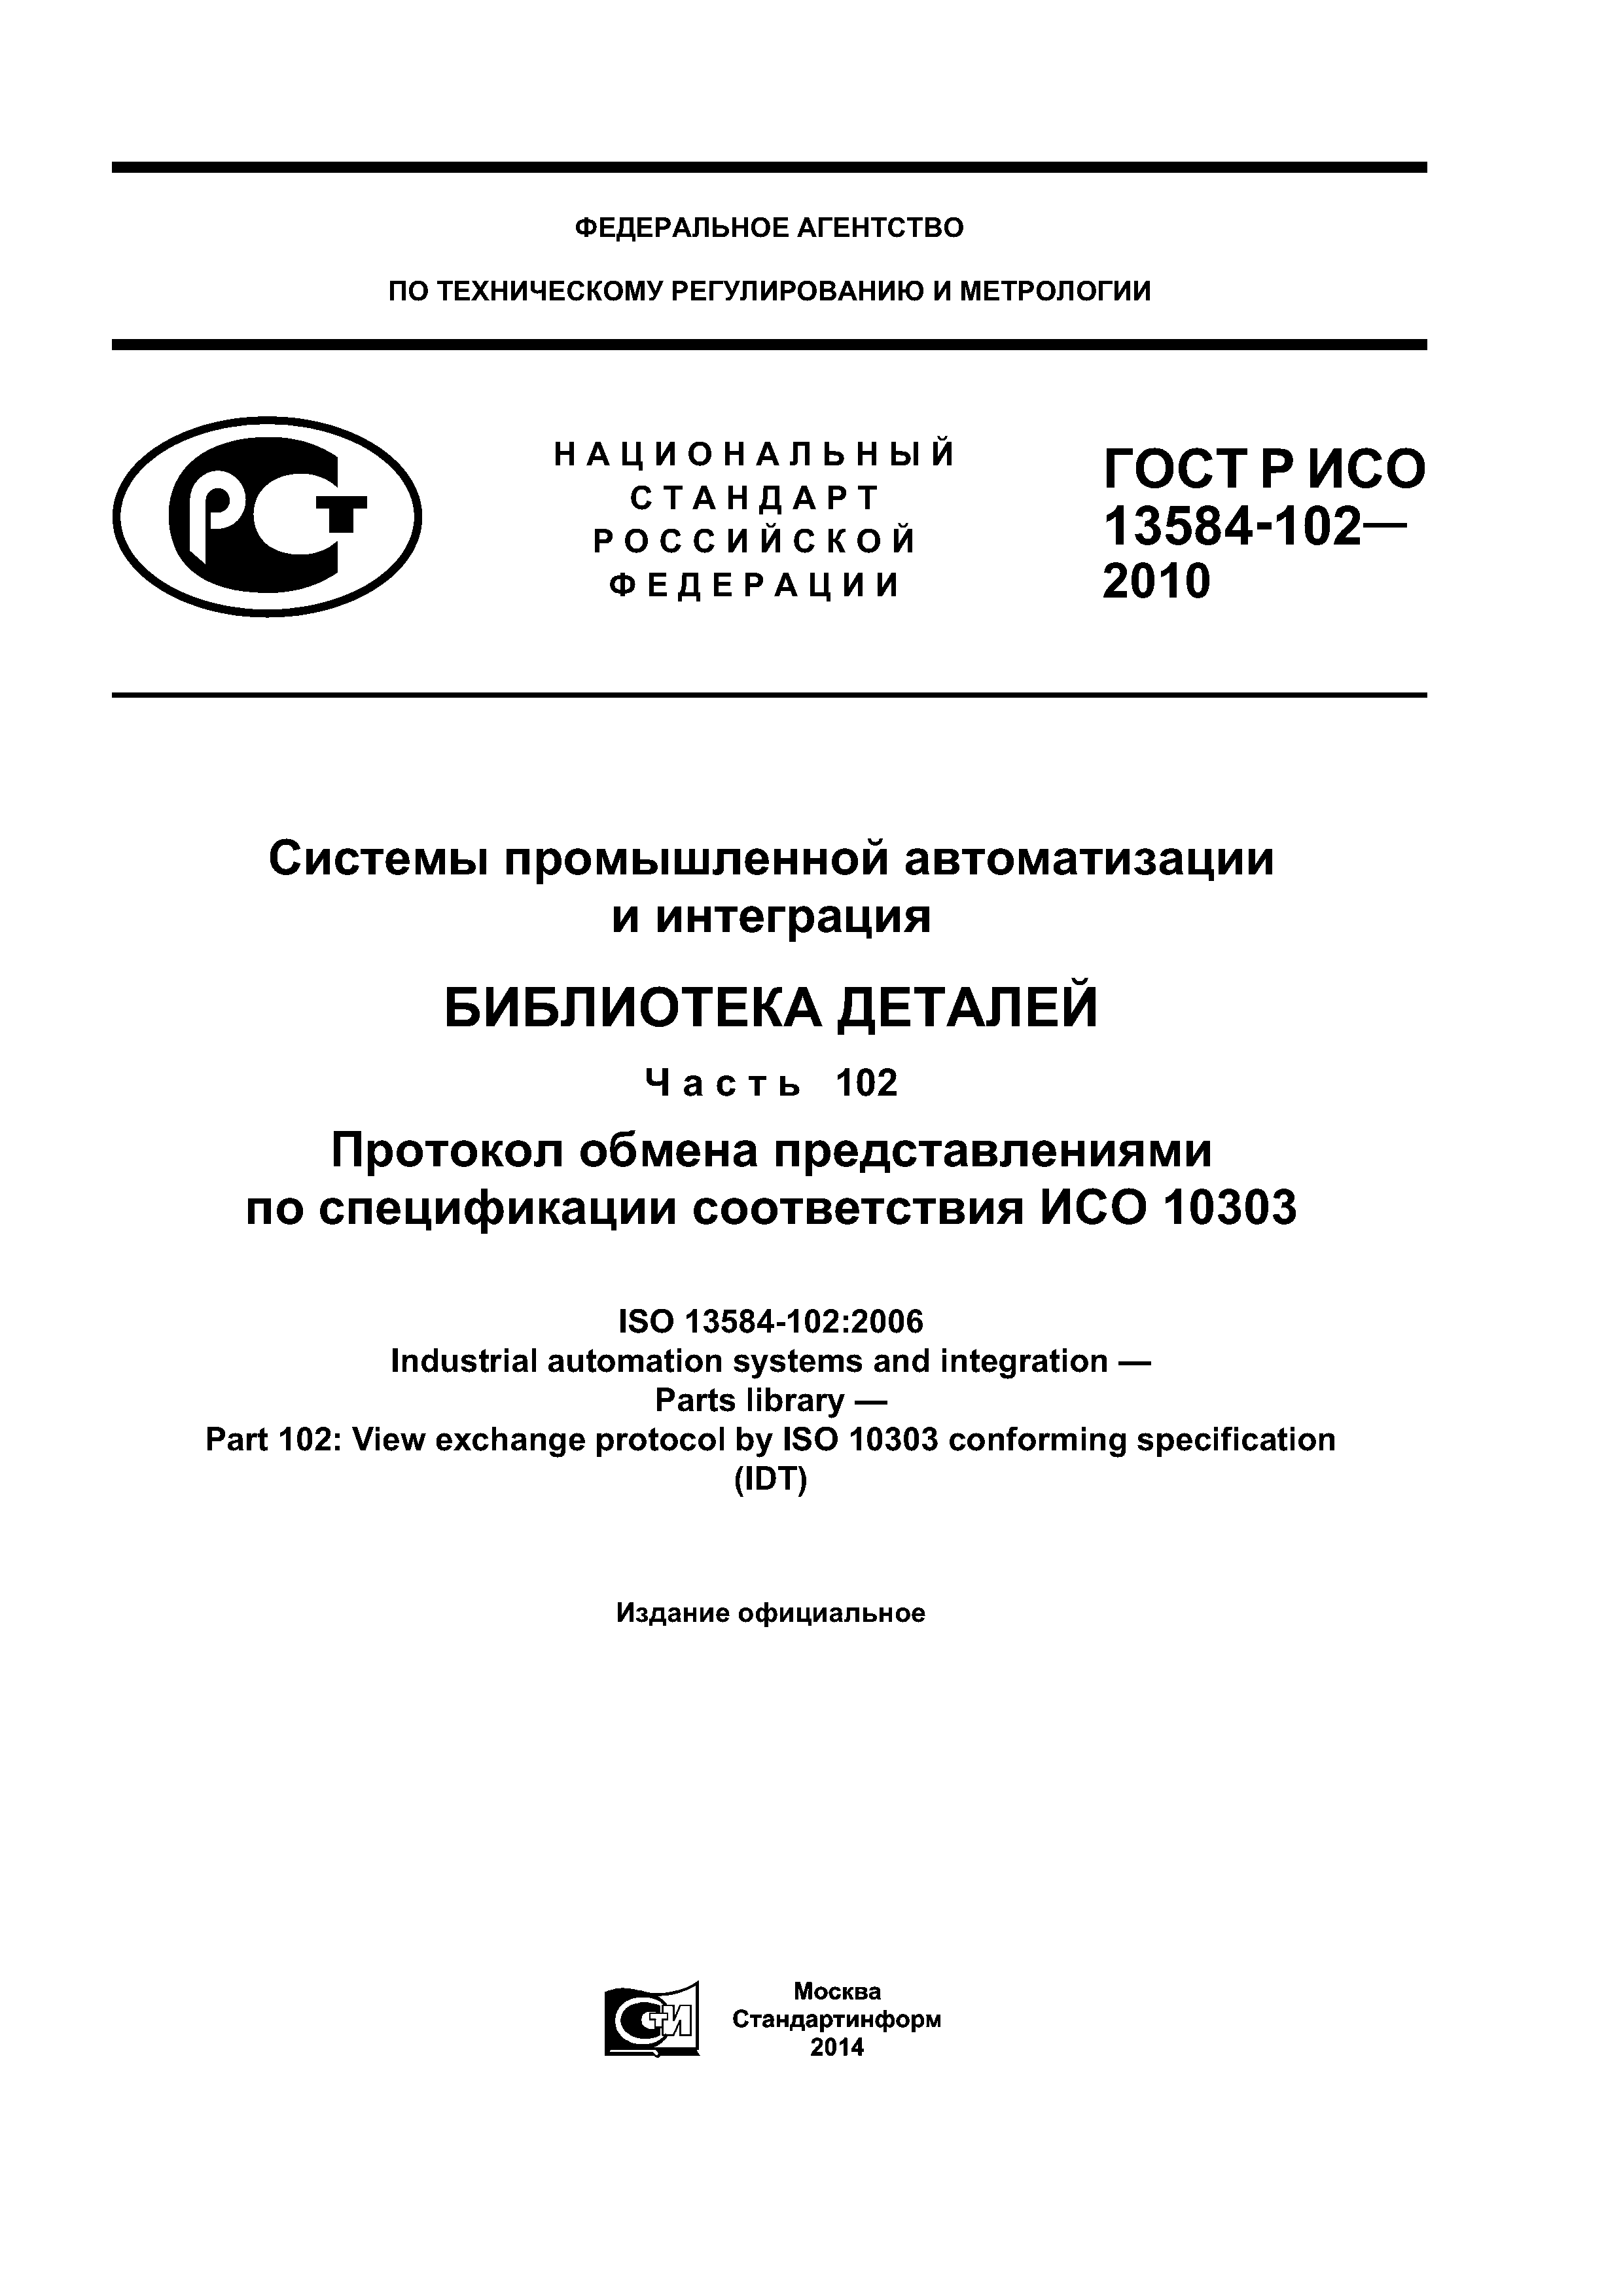 ГОСТ Р ИСО 13584-102-2010